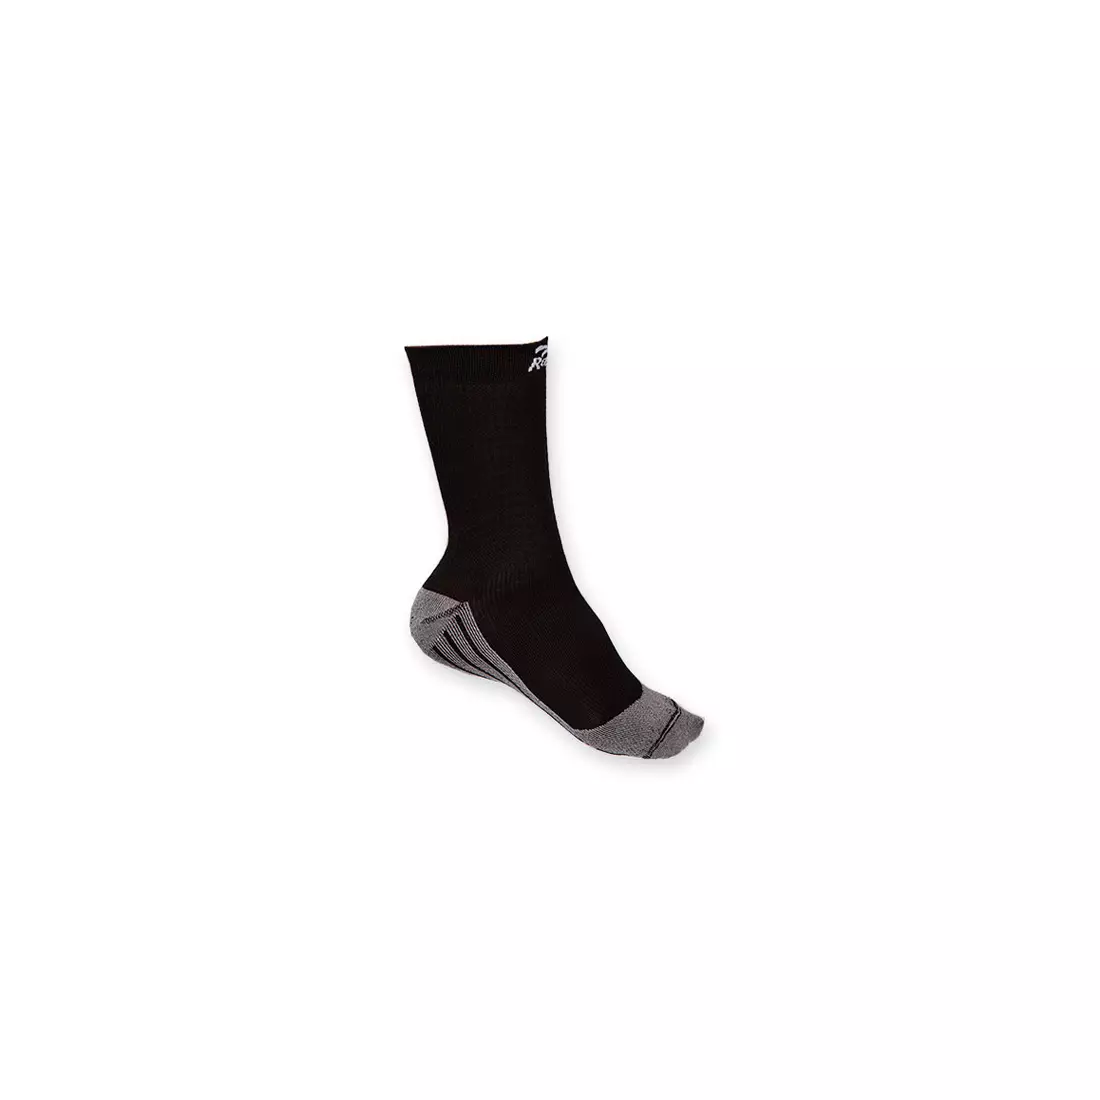 ROGELLI RCS-05 - DRYARN CARBON - sportovní ponožky, kompresní, černé